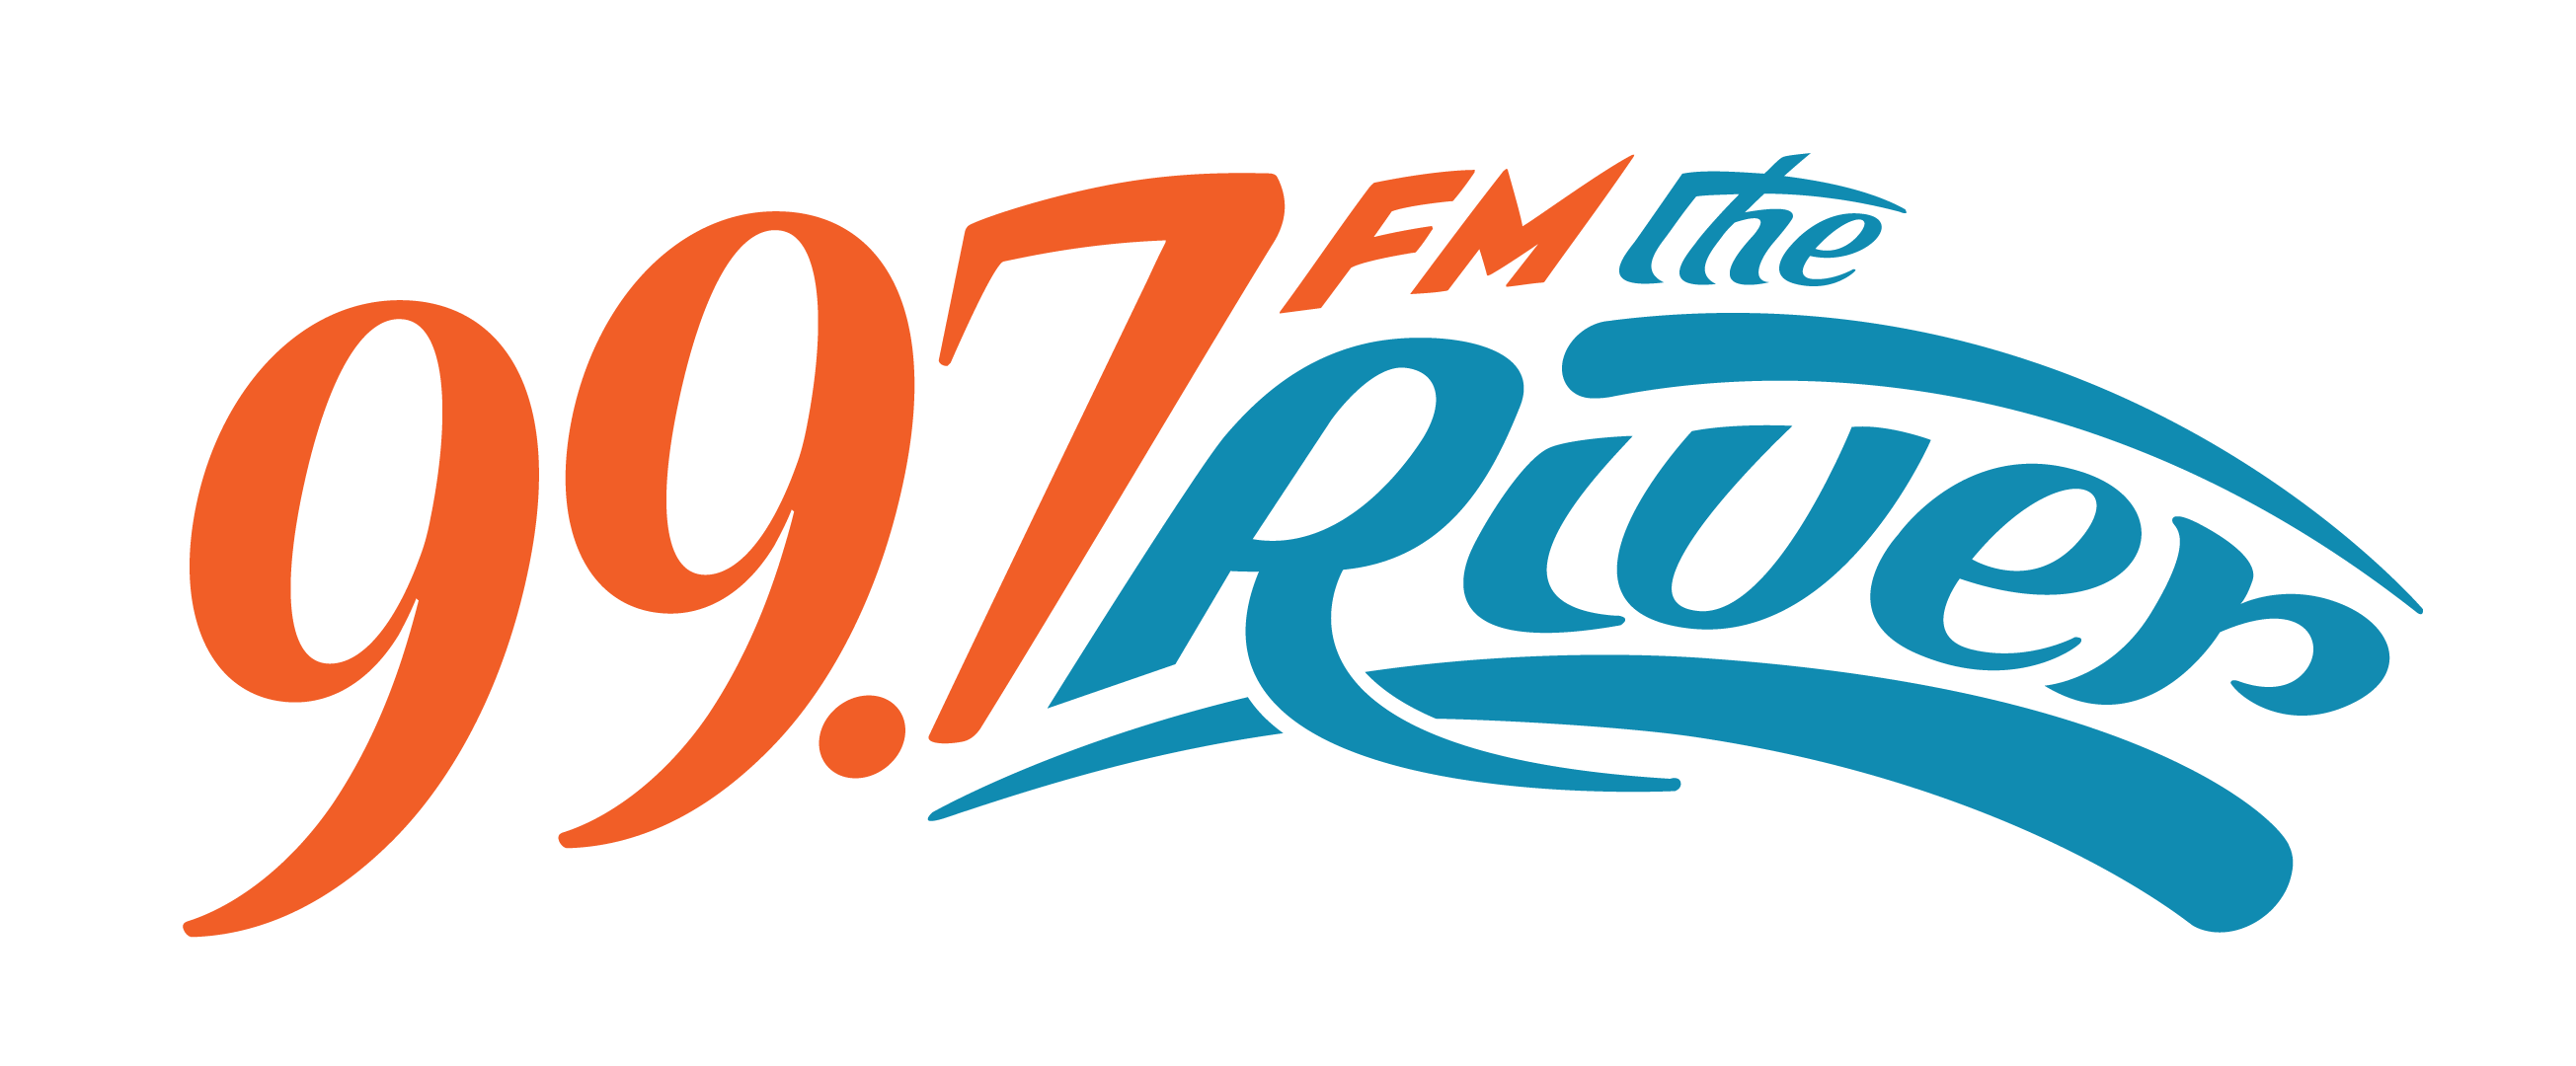 CIQC : The River 99.7 FM